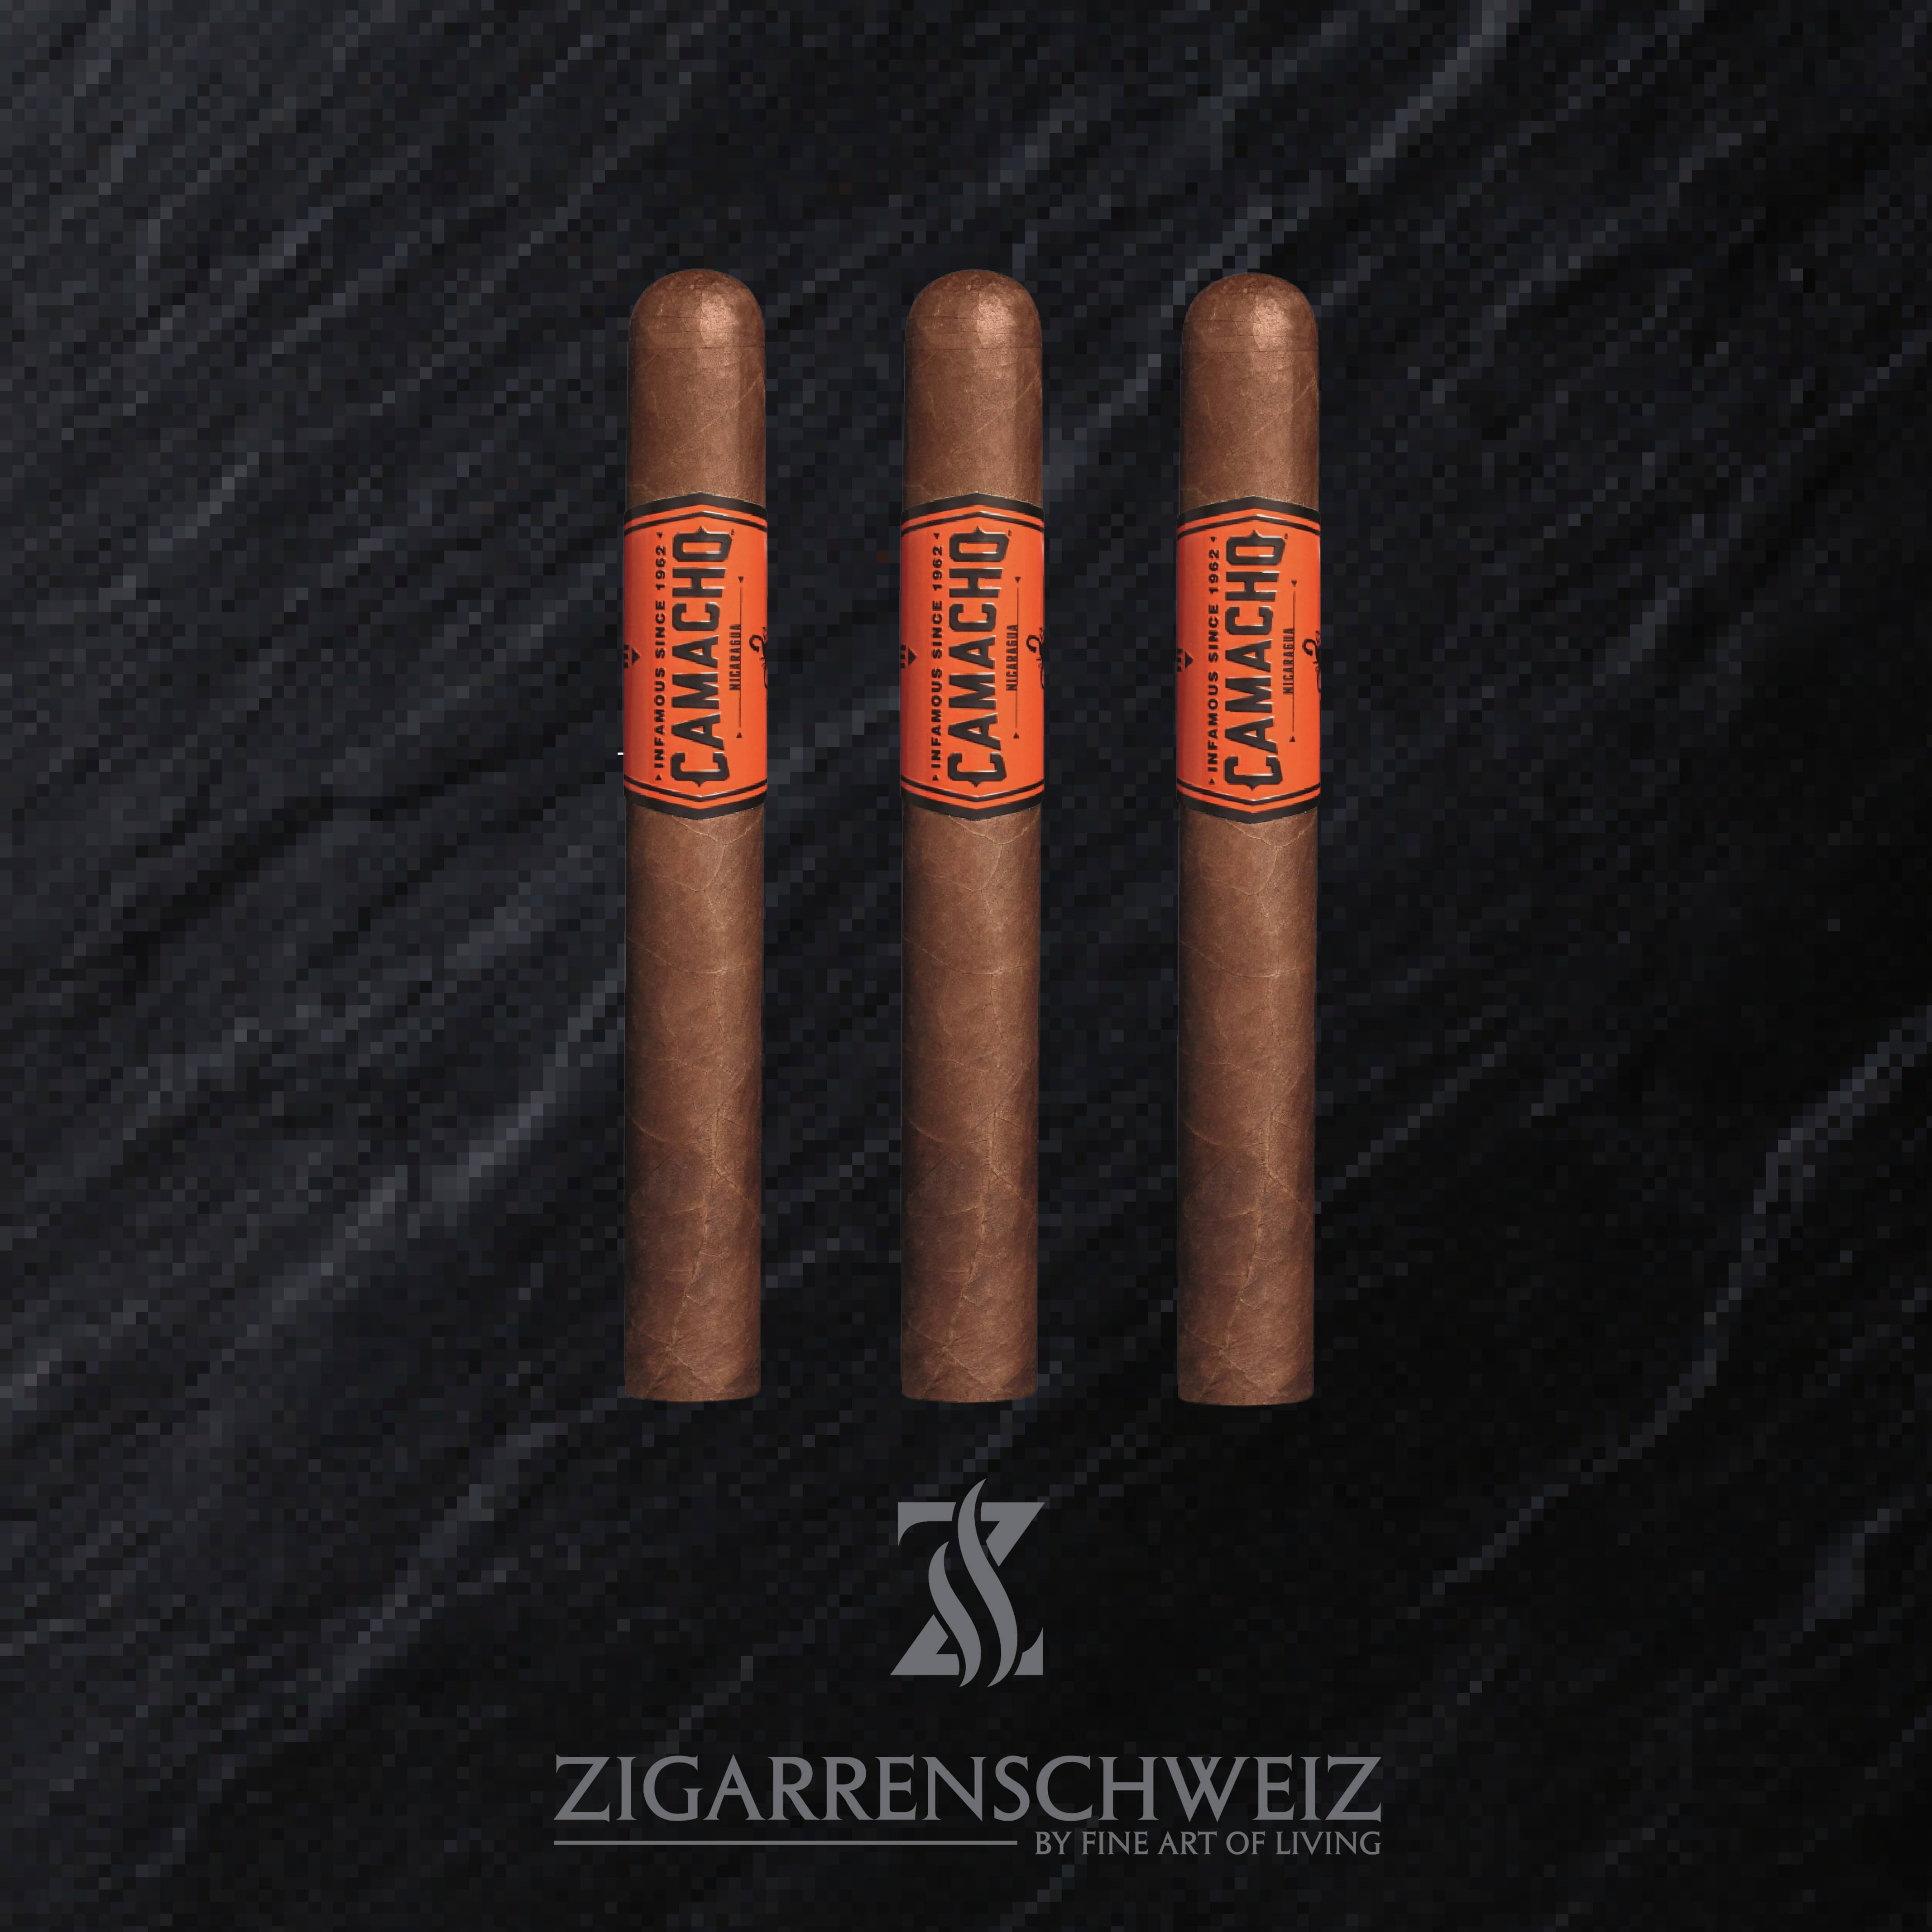 Camacho Nicaragua Gran Churchill Zigarren Schweiz 3er Etui